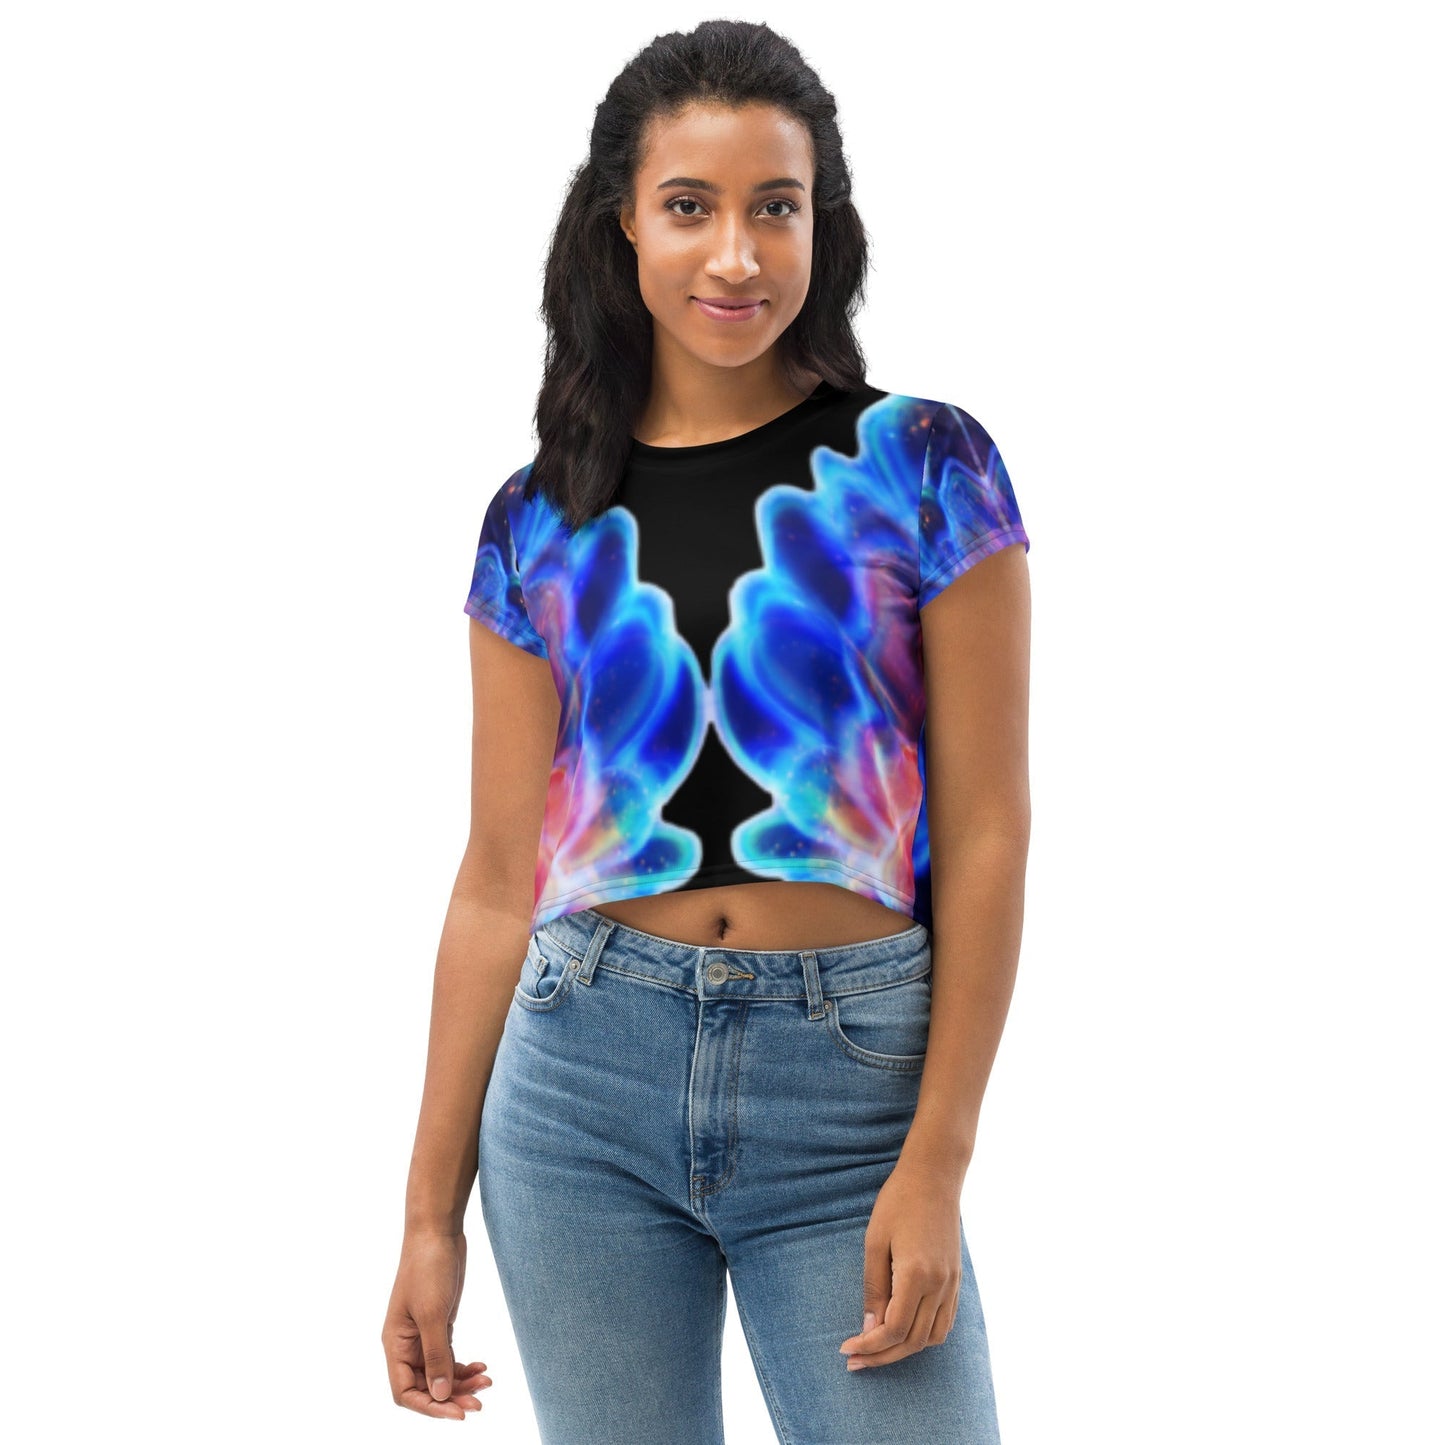 Crop Tee - Indigo Fusion; Beautiful Shirt with Artistic Glass Design DragonFireGlass